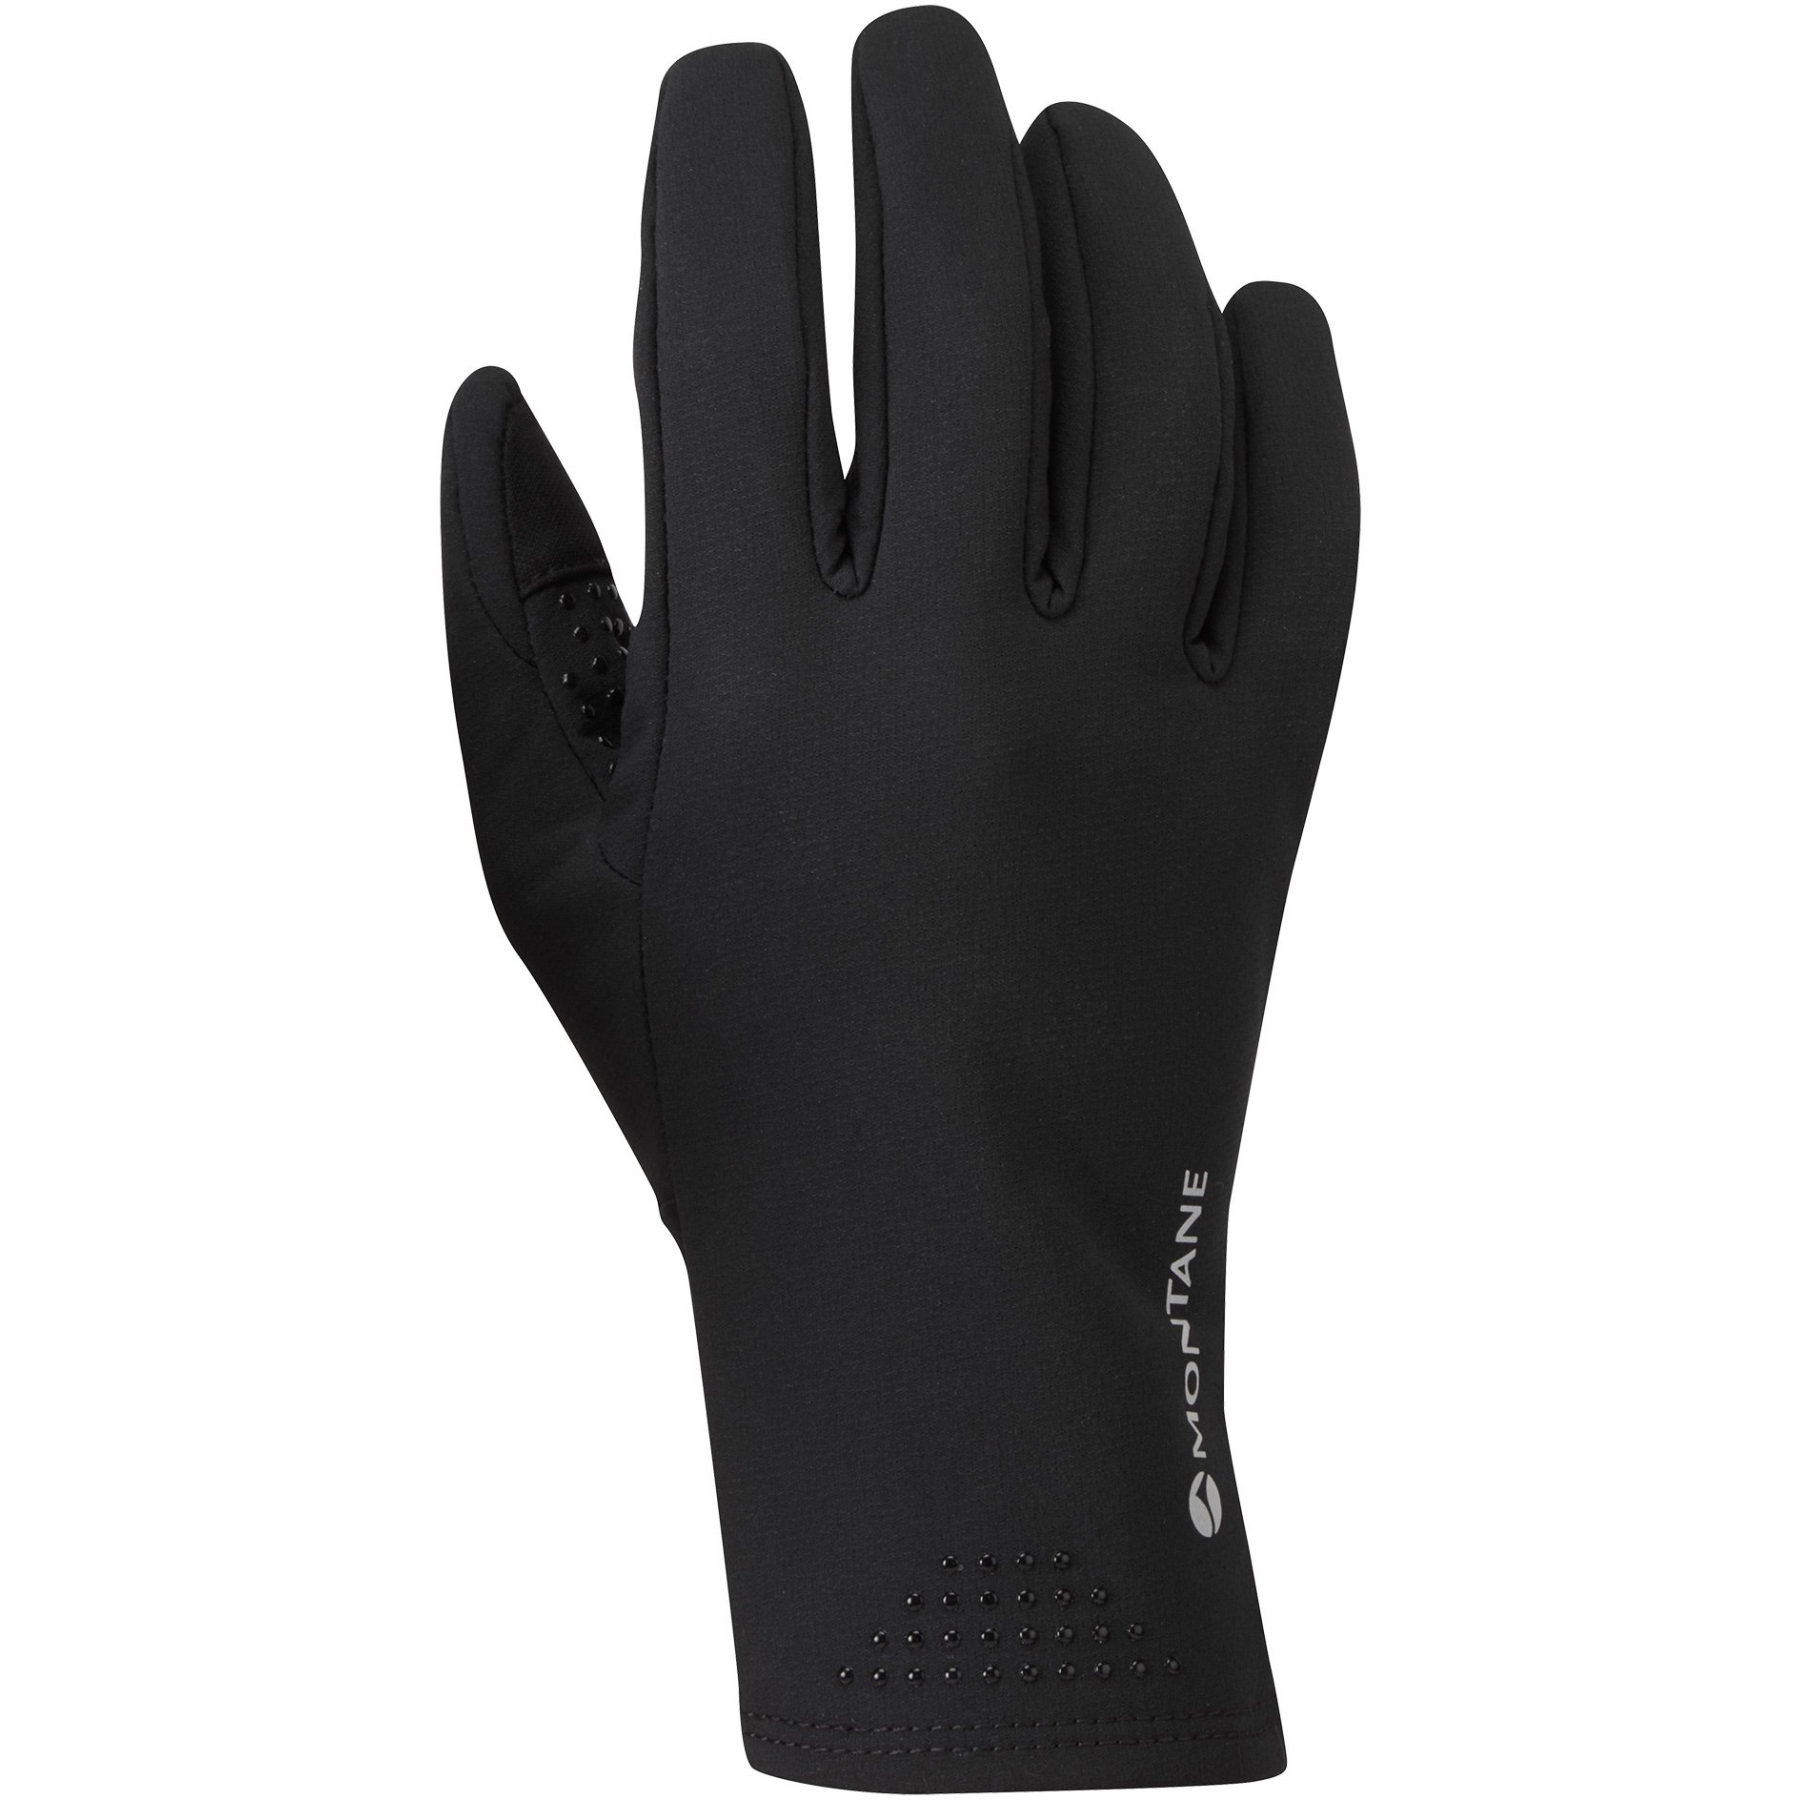 Produktbild von Montane Krypton Lite Softshell Handschuhe - schwarz